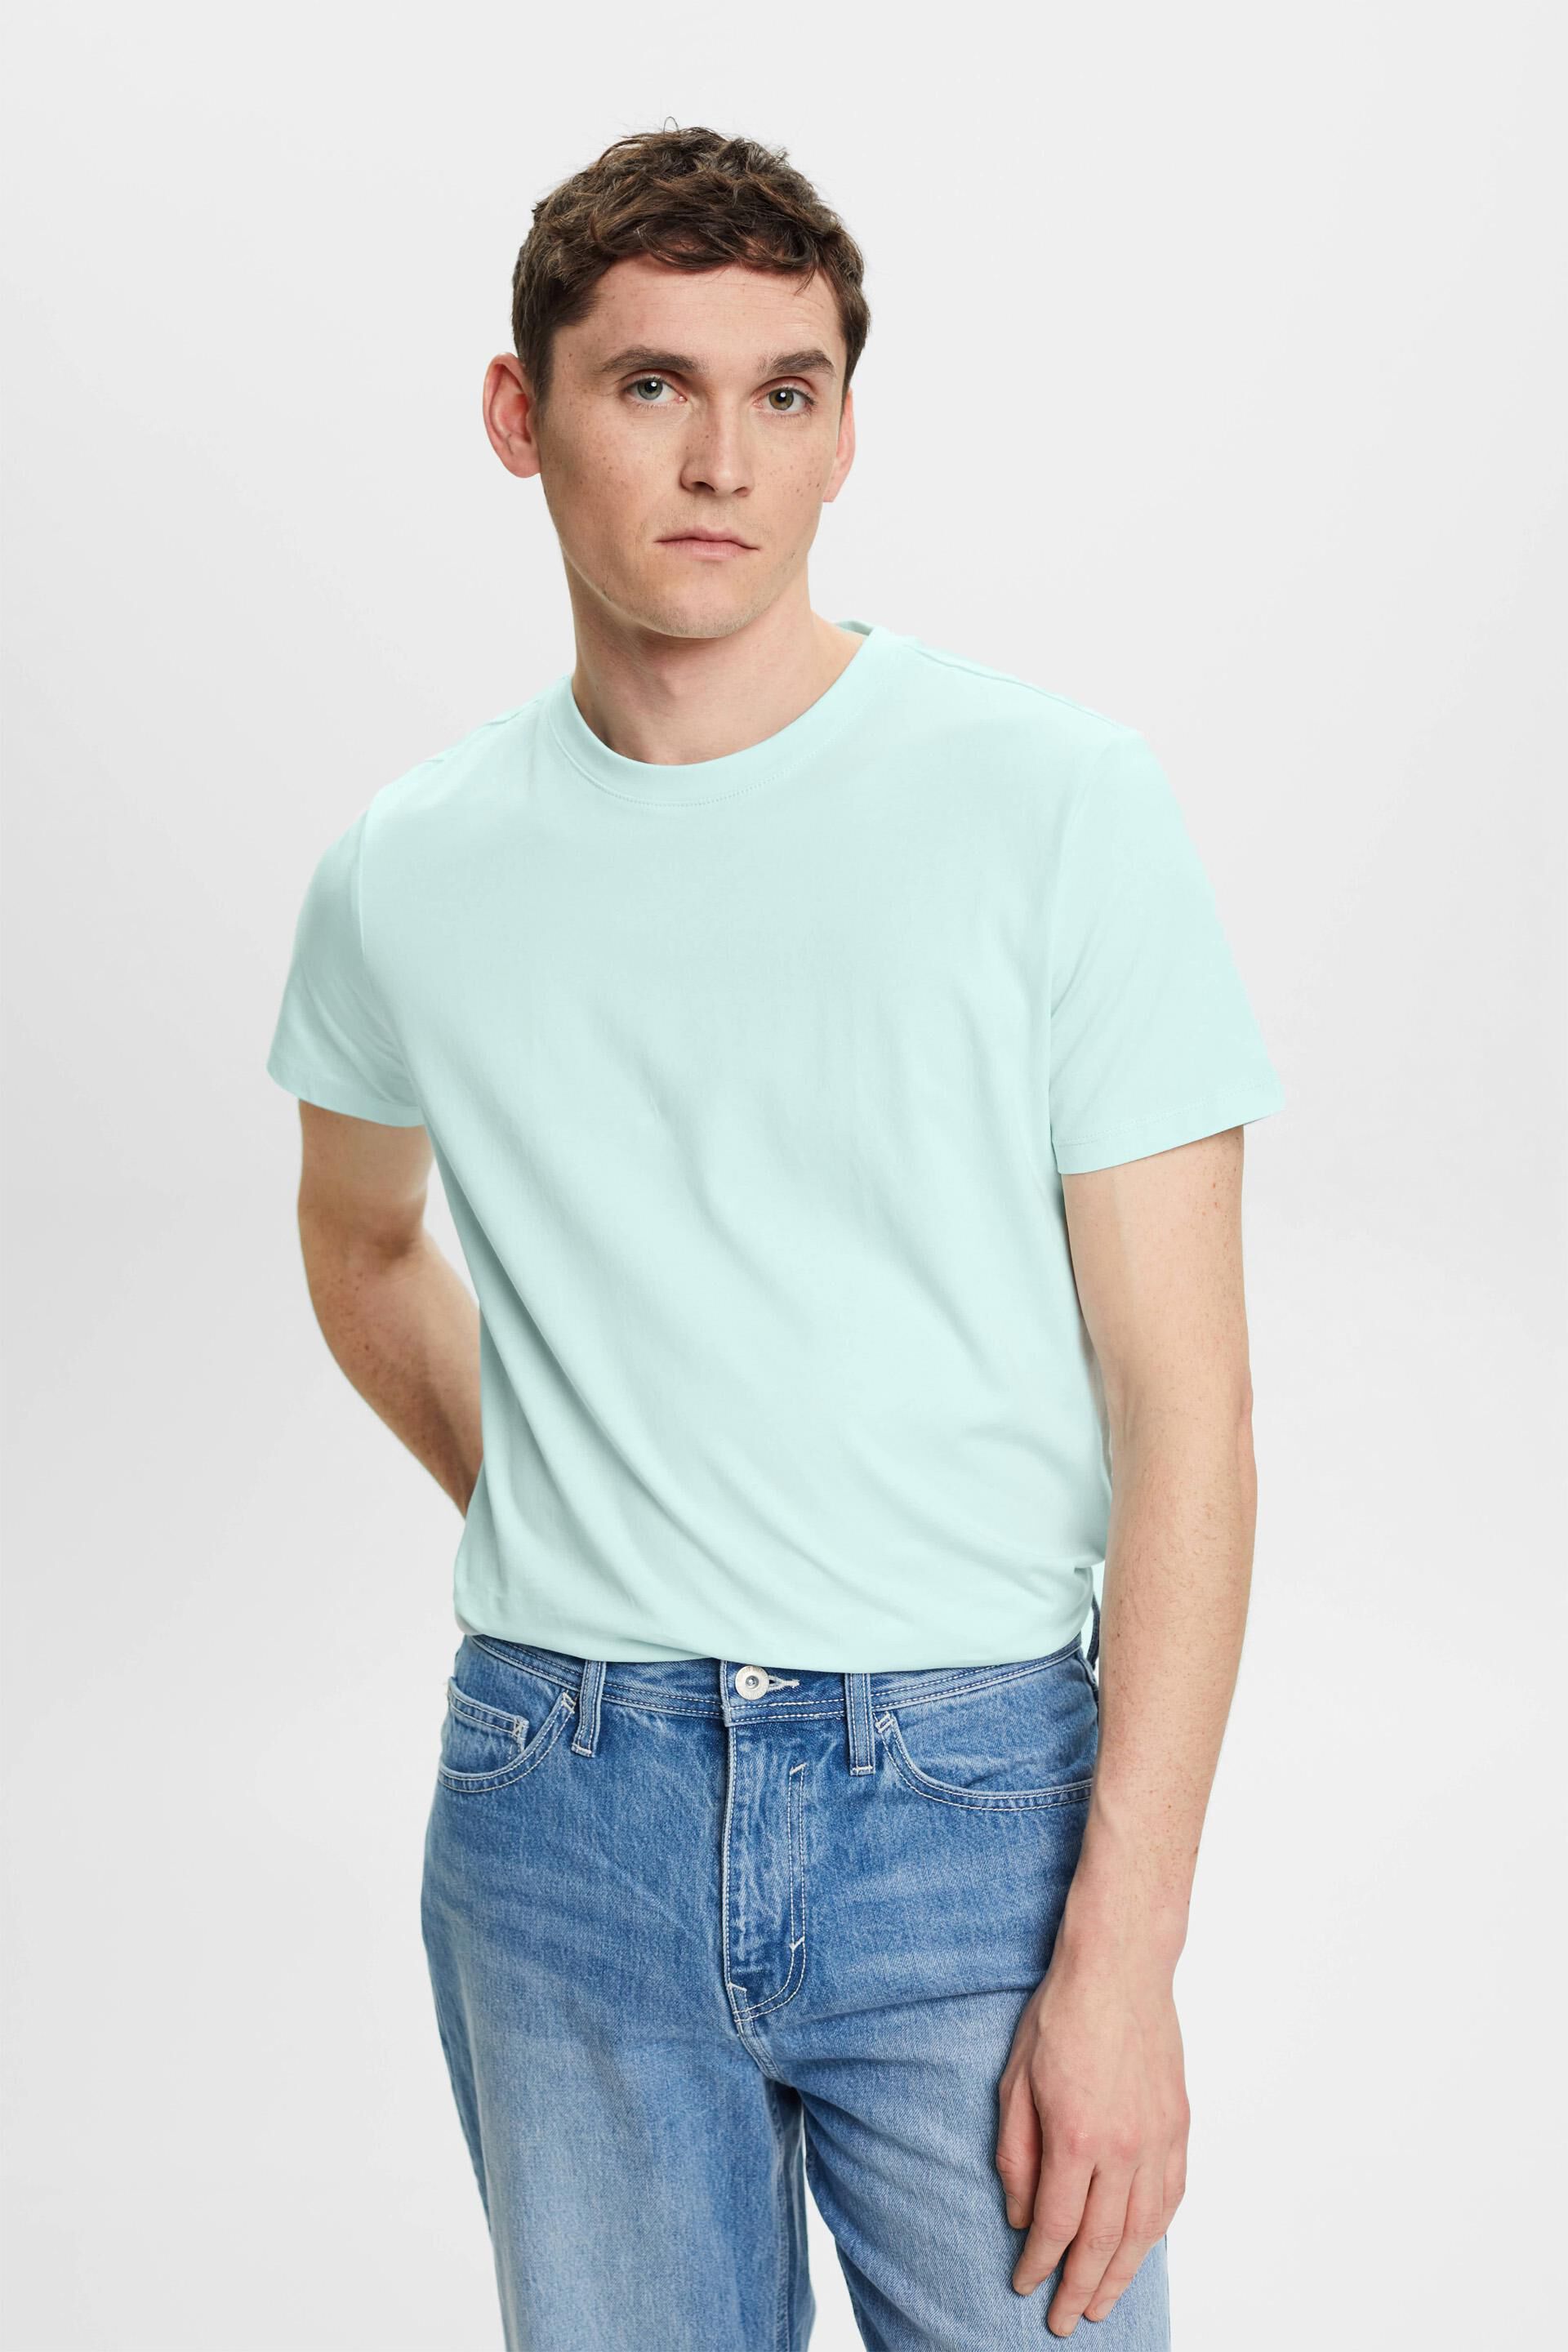 Esprit fit t-shirt cotton Slim